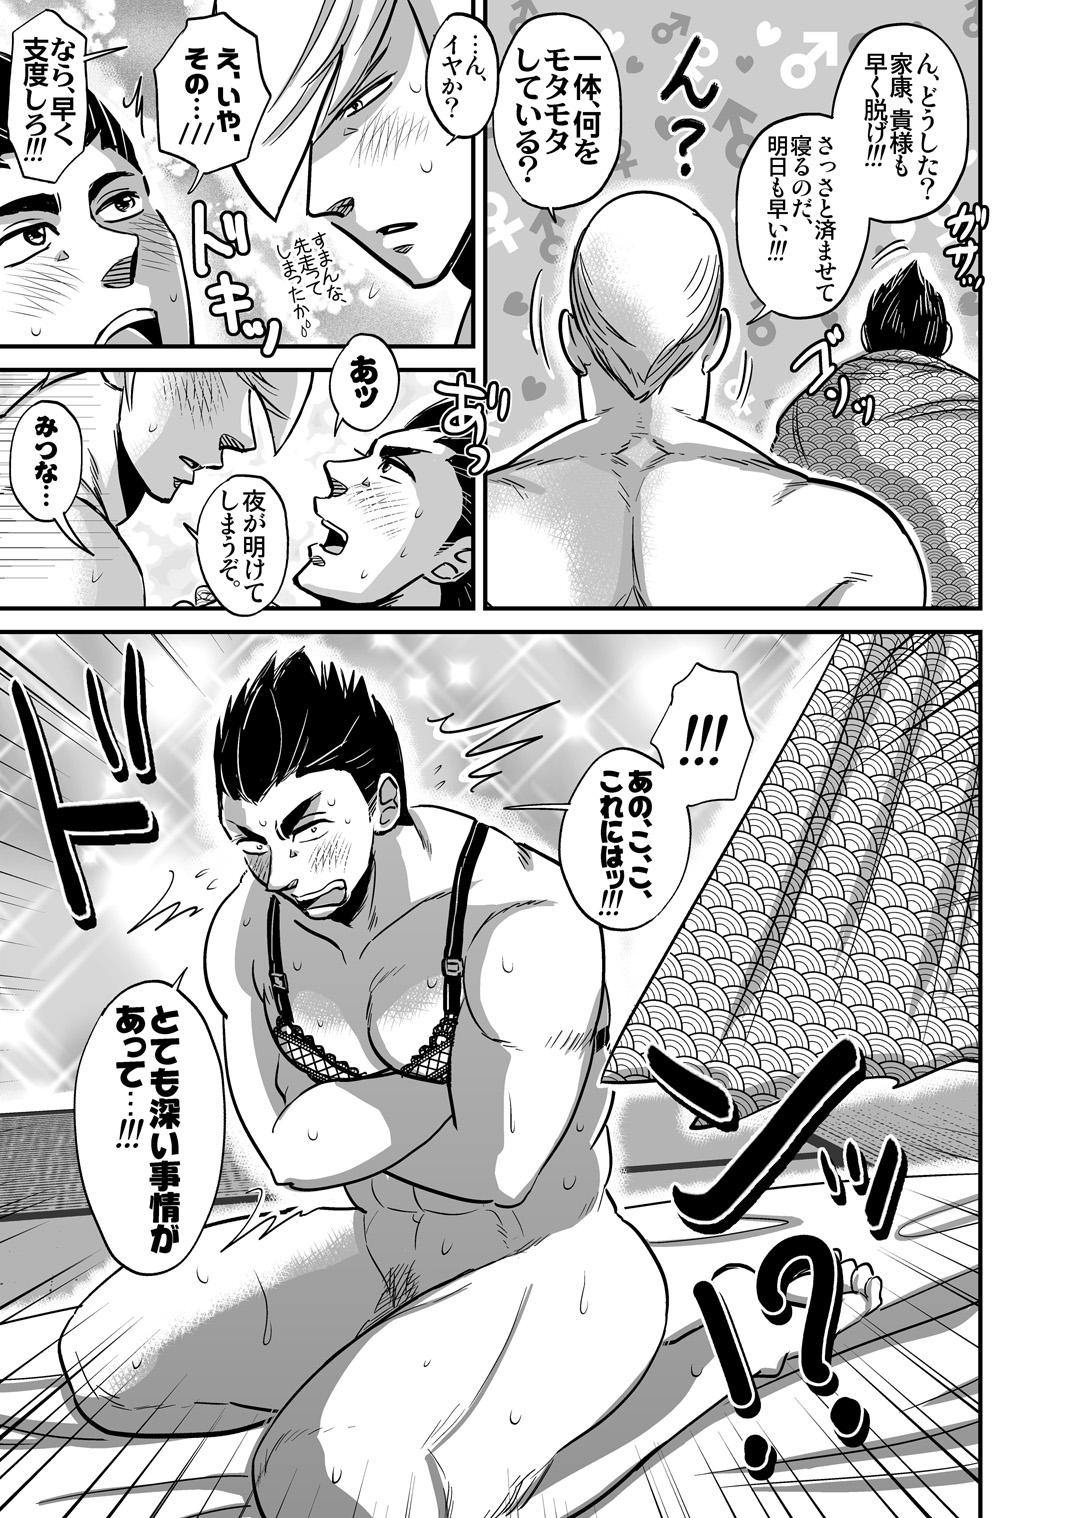 Twerk Multi-HOMO manga at home - Sengoku basara Shemale - Page 6